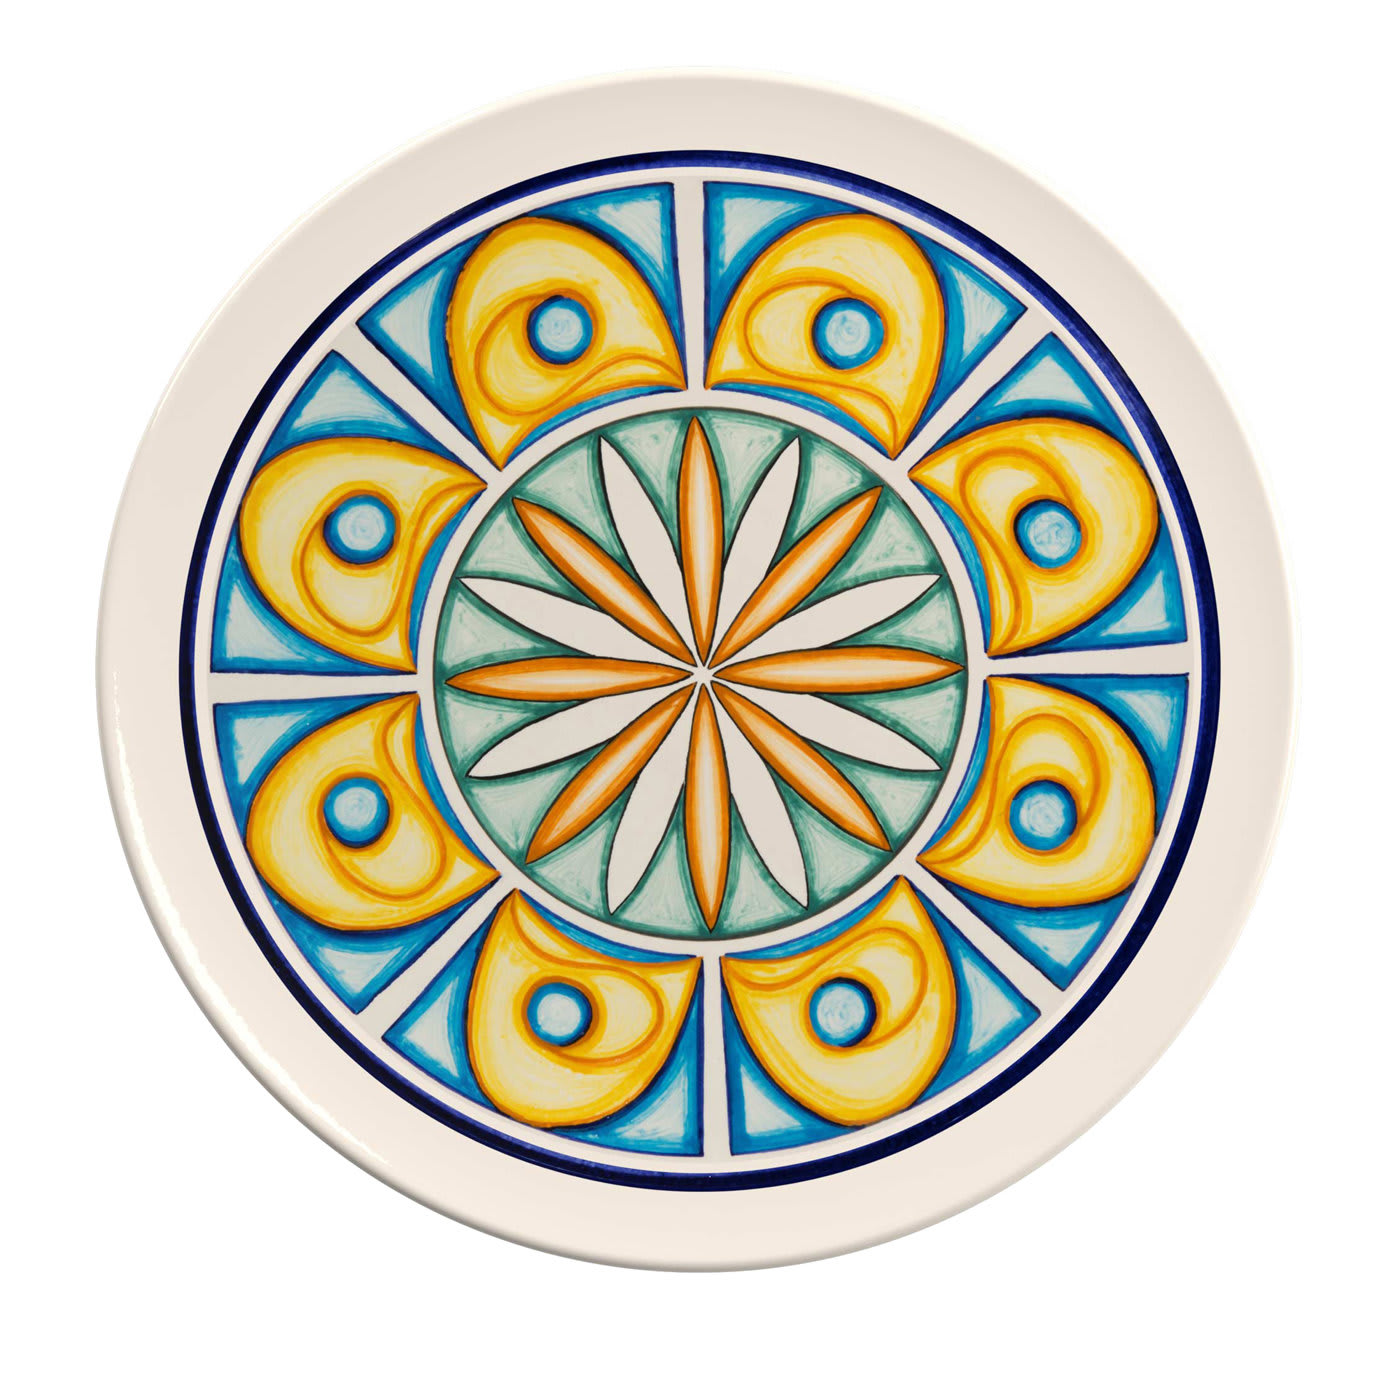 Colapesce Occhi Gialli Decorative Plate - Crisodora